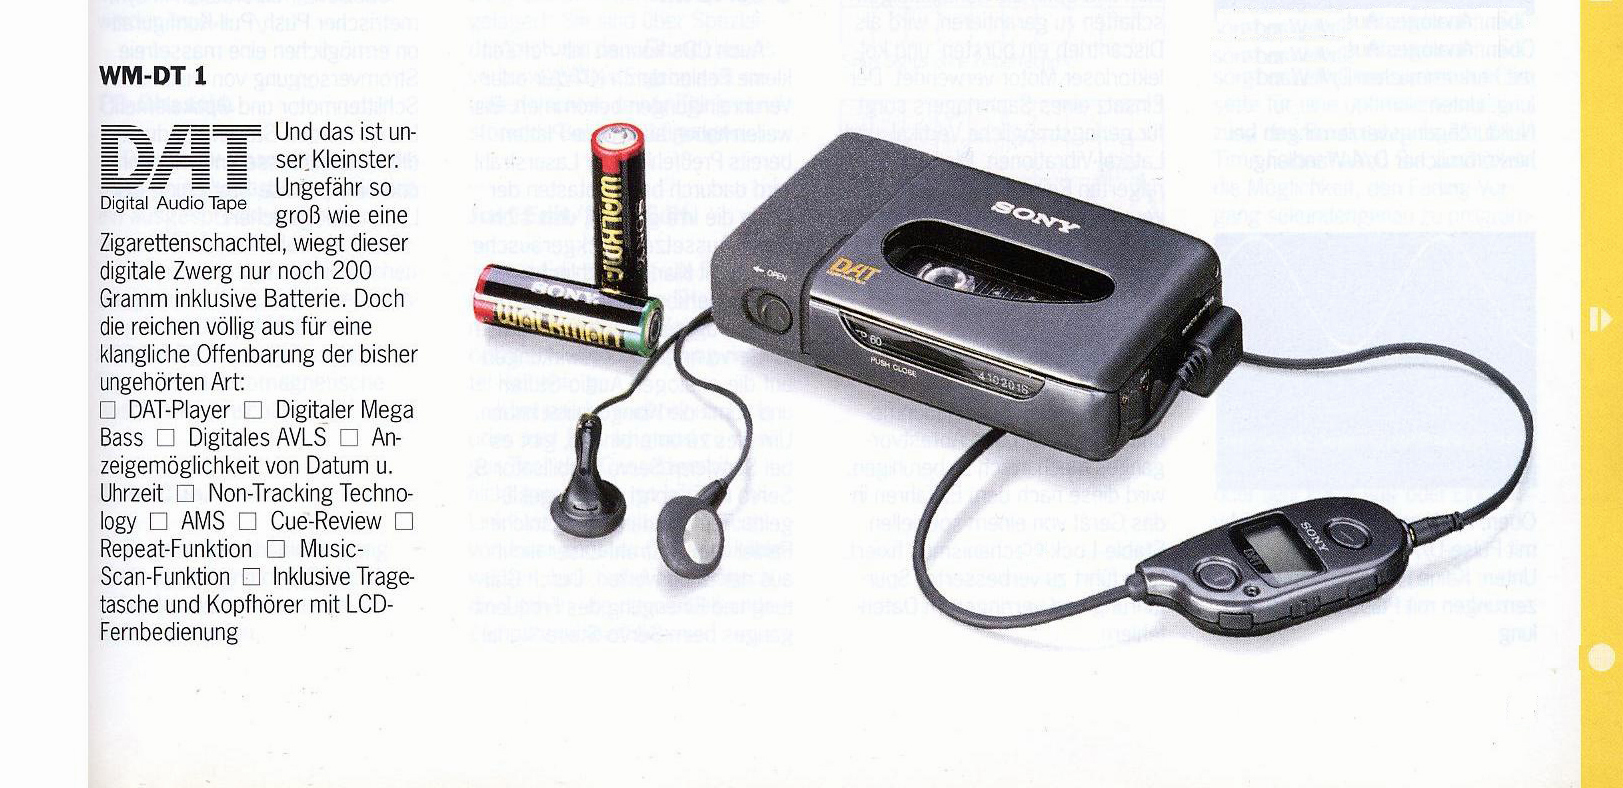 Sony WM-DT 1-Prospekt-1993.jpg